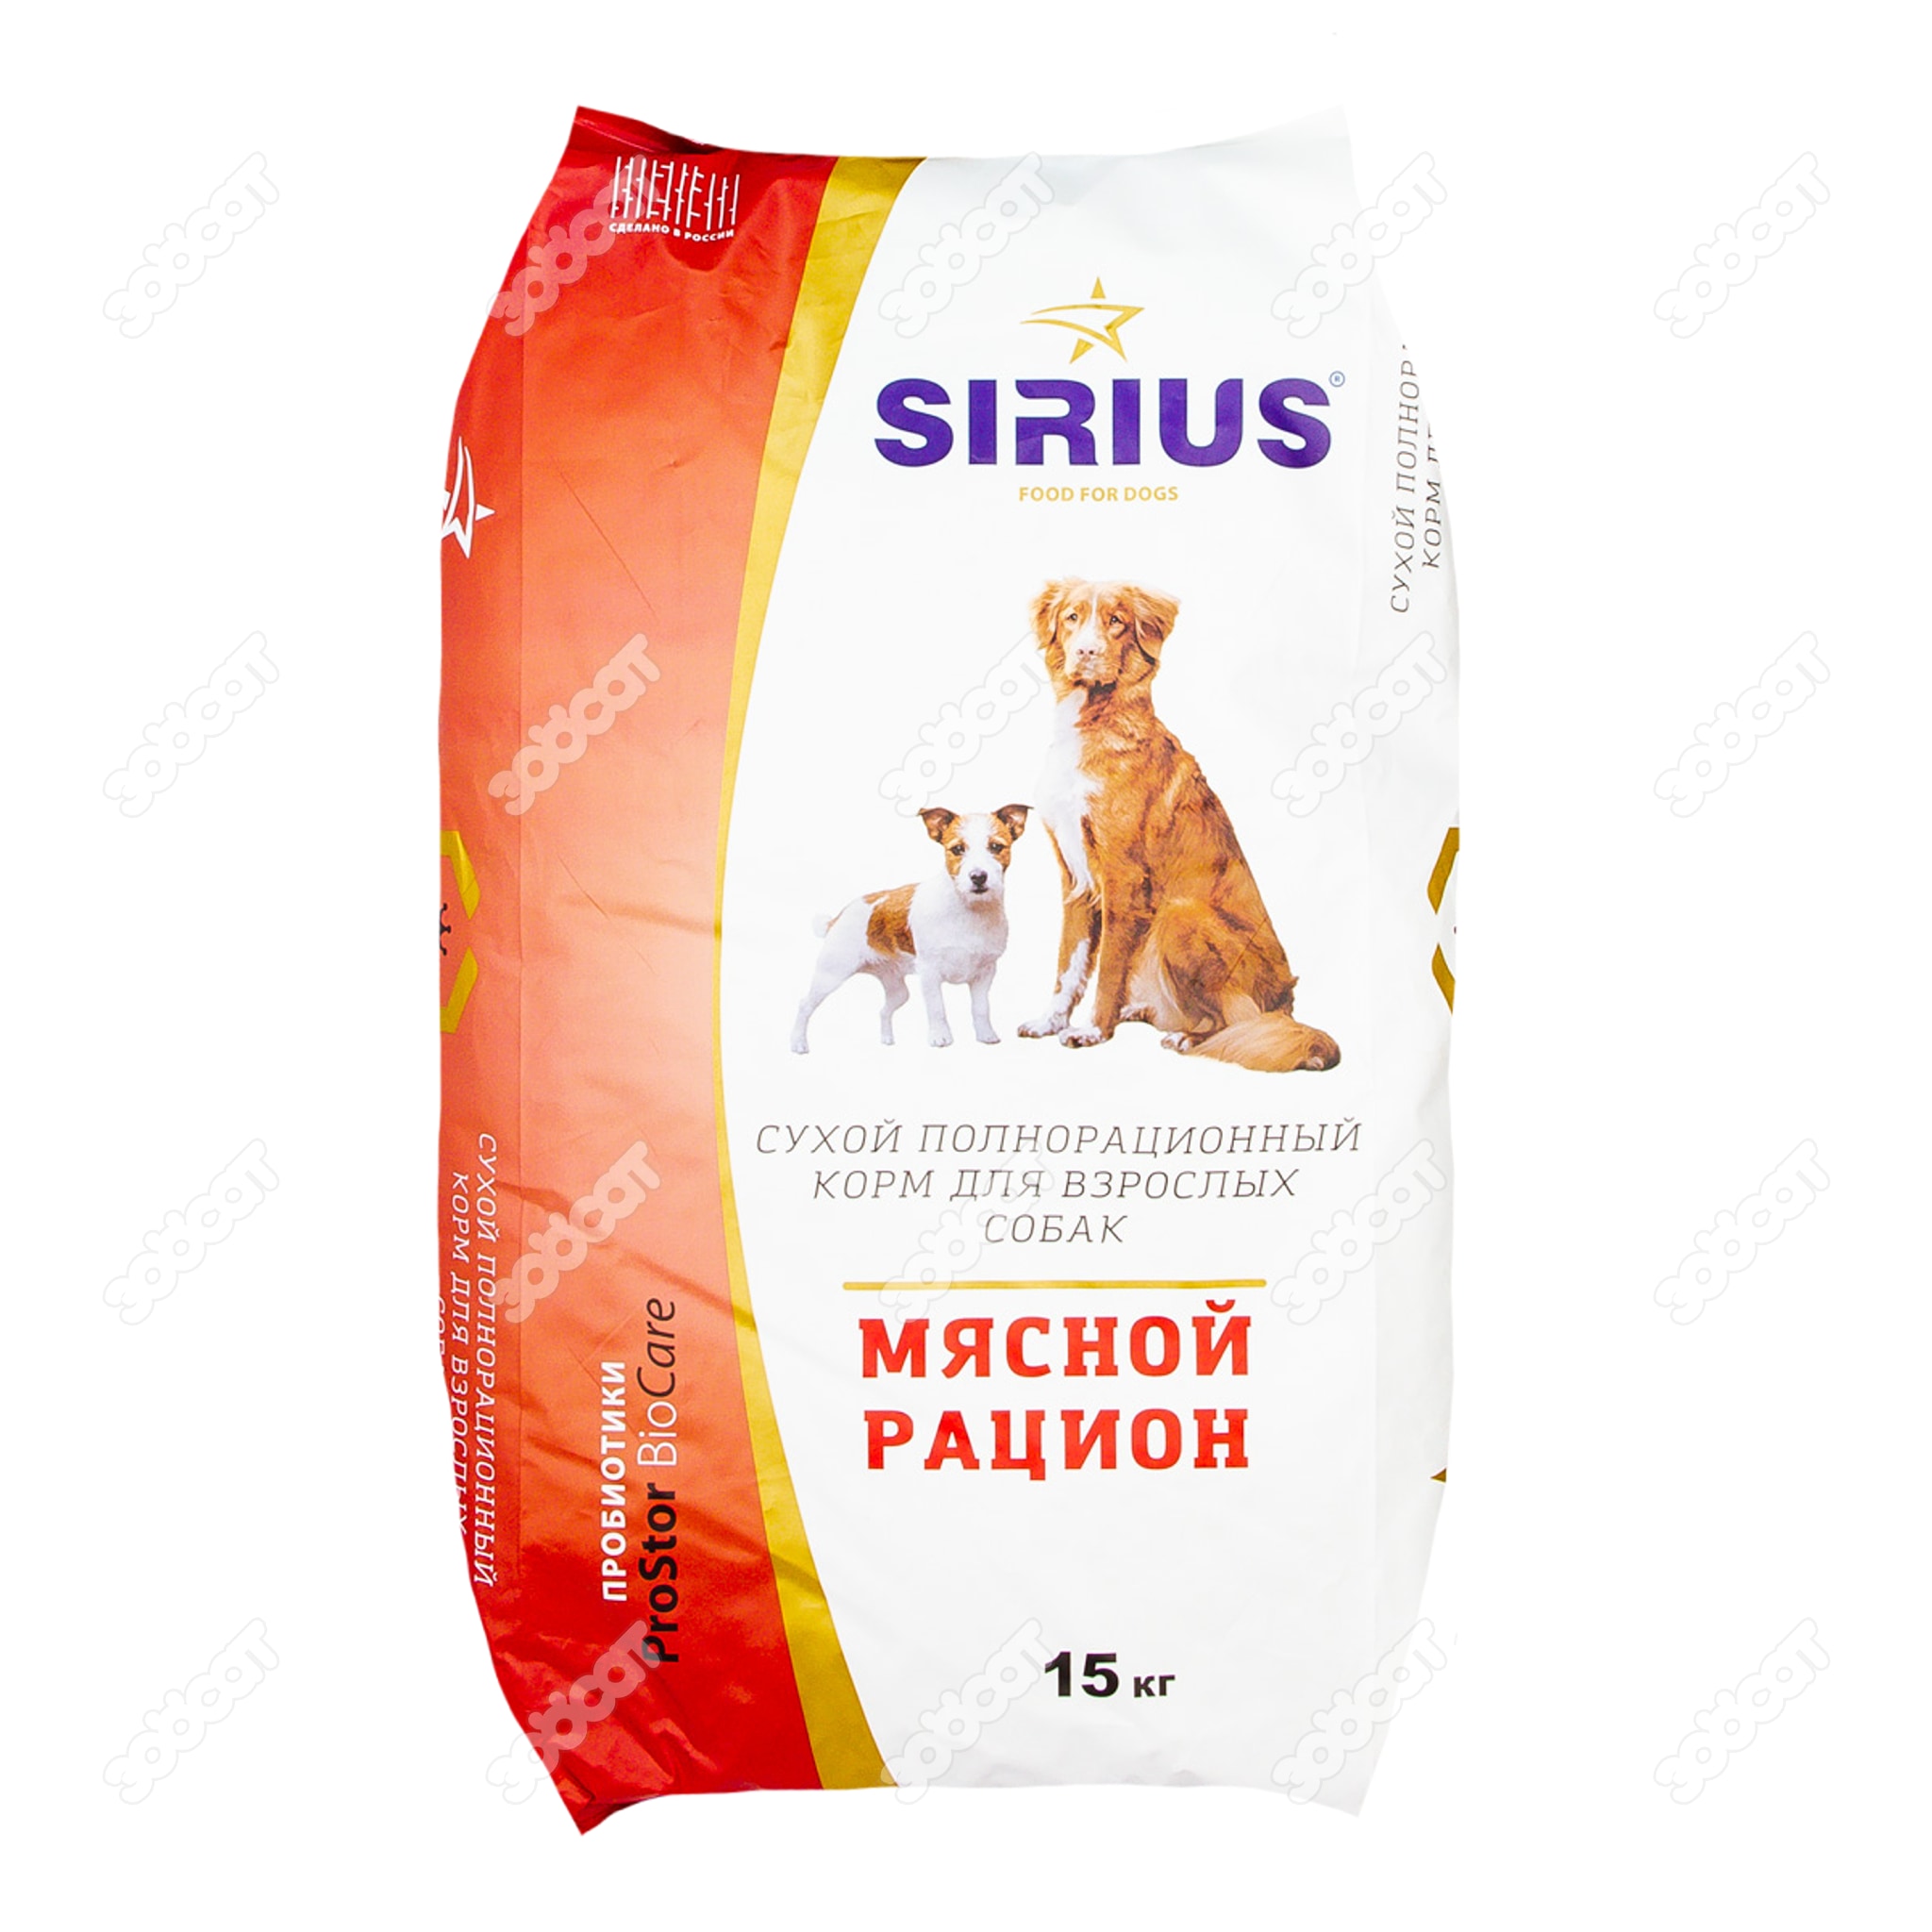 Сириус корм для собак 15. Сириус корм для собак 15 кг. Sirius корм для собак 15кг. Корм Сириус для щенков 15кг. Сириус корм для собак 20 кг состав.